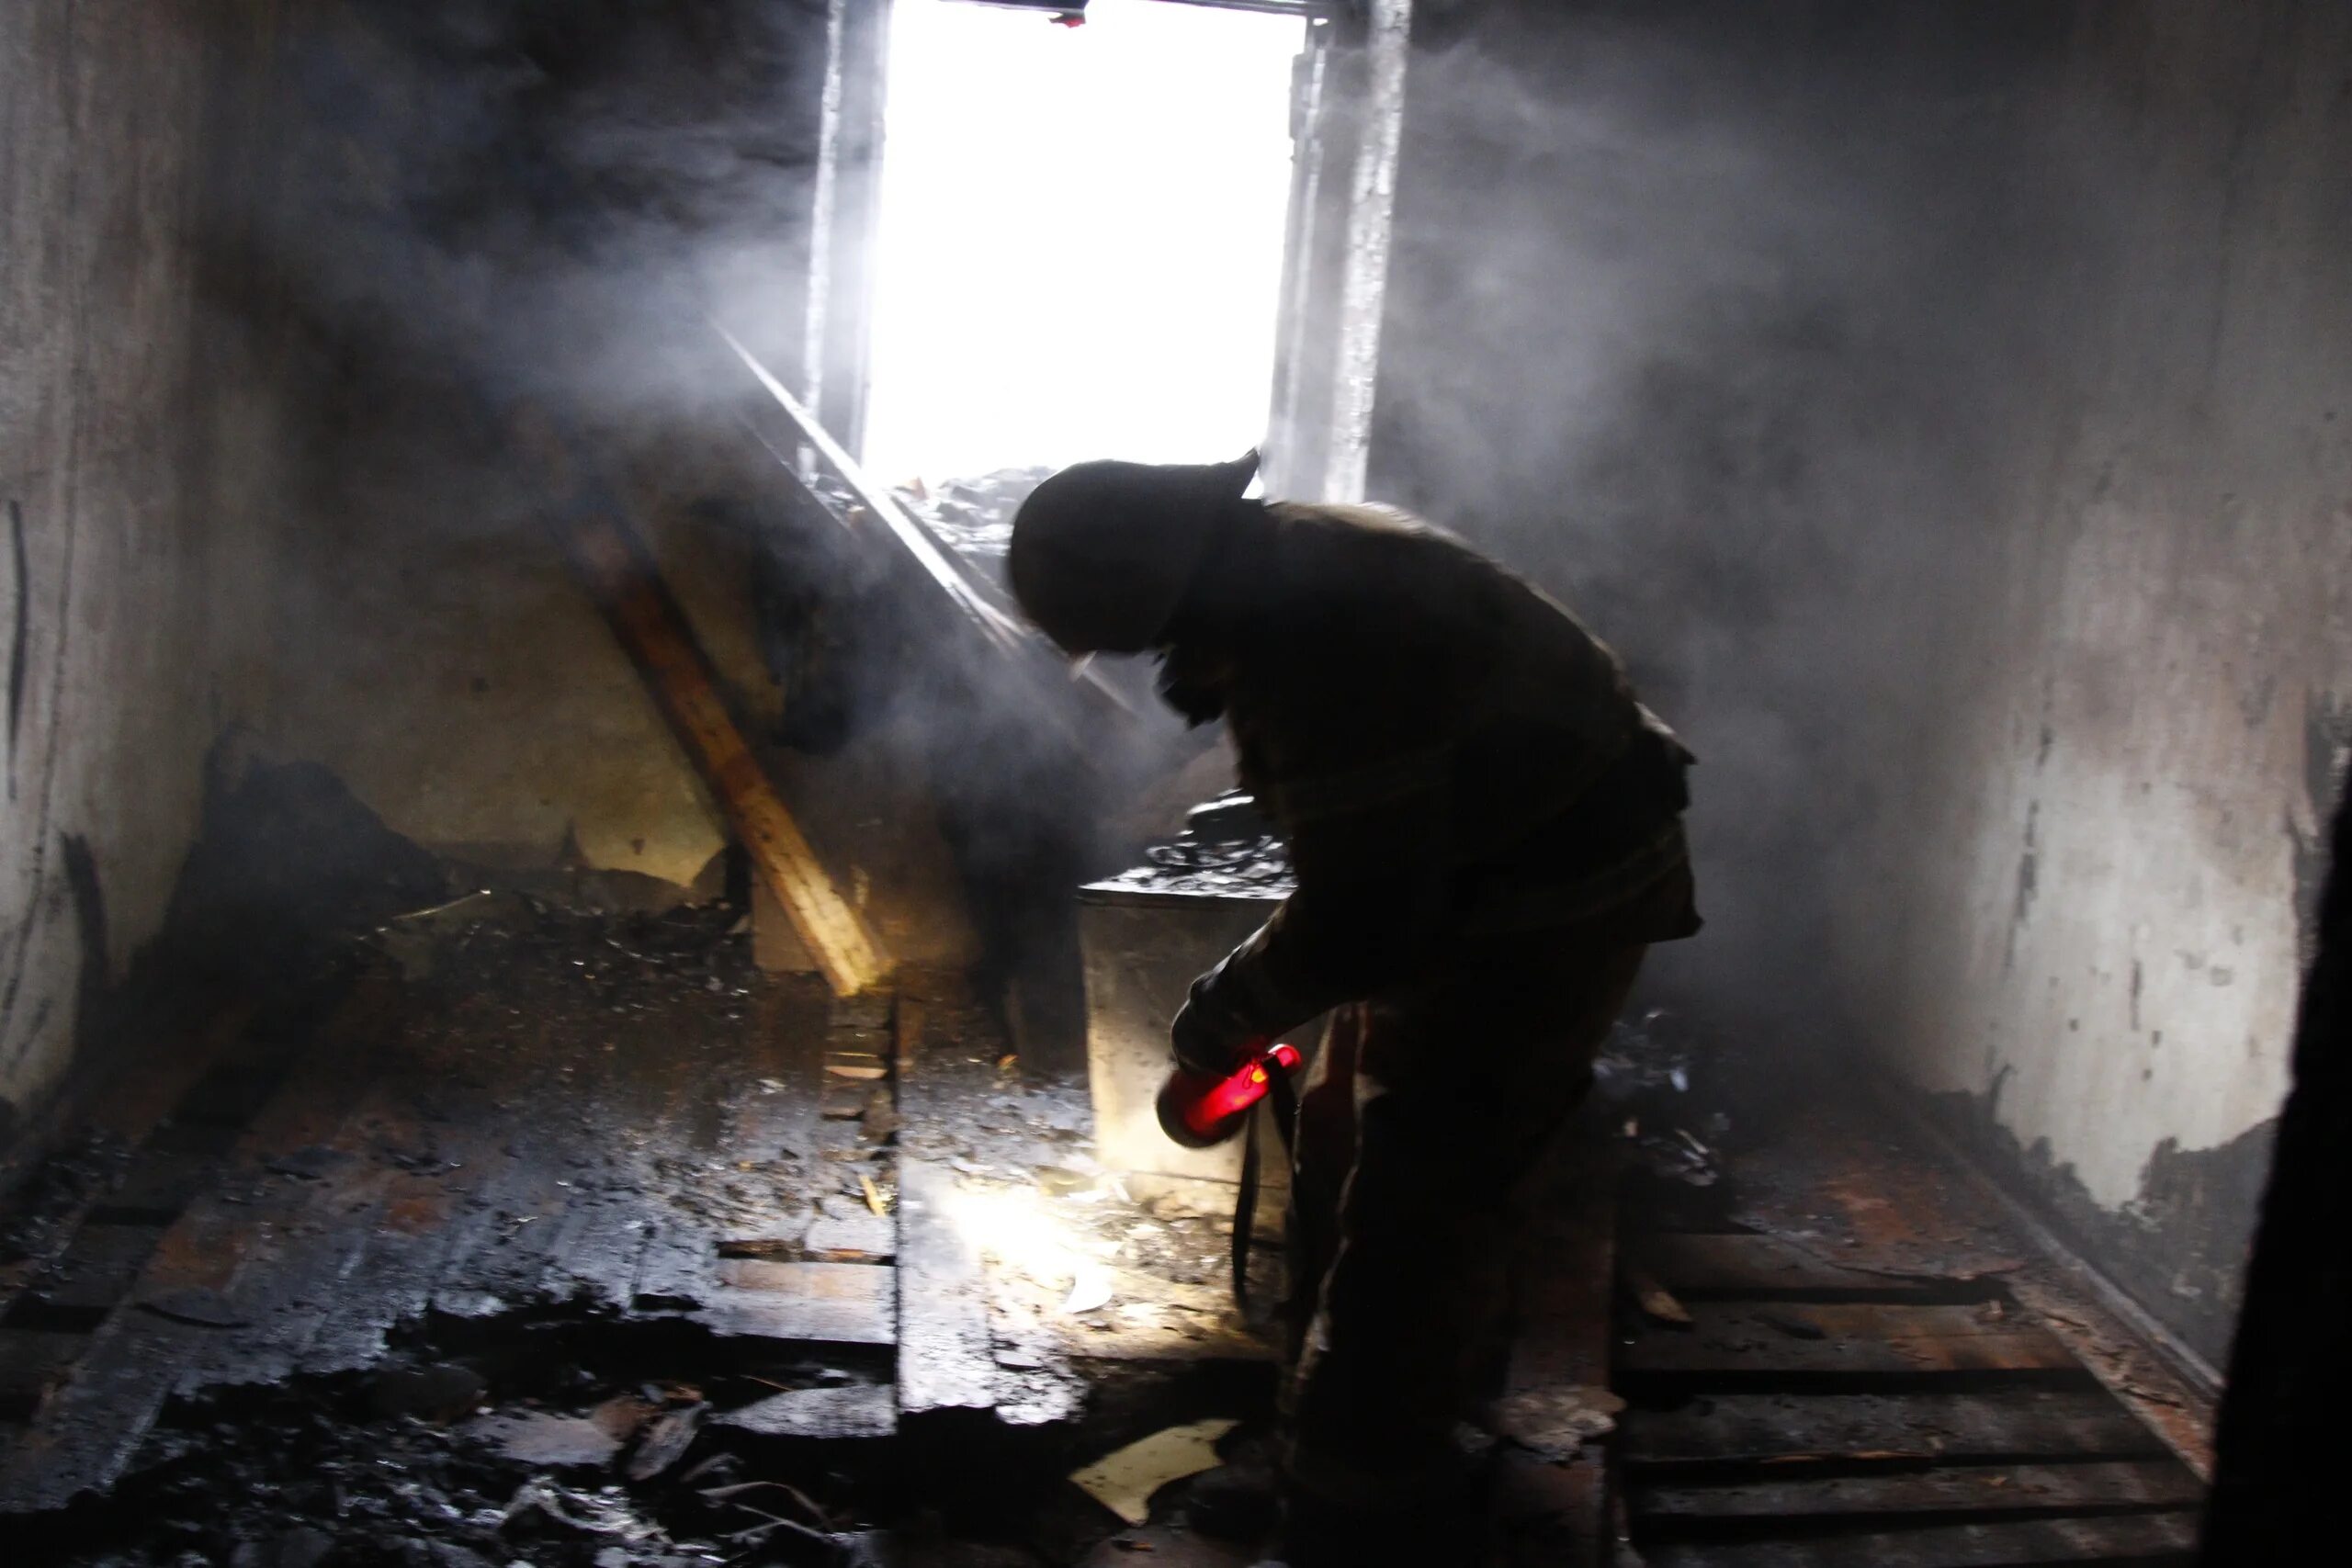 Пожар в Казани сейчас в Дербышках. Печи после пожара. Сгорел дом в Дербышках. После сильного пожара